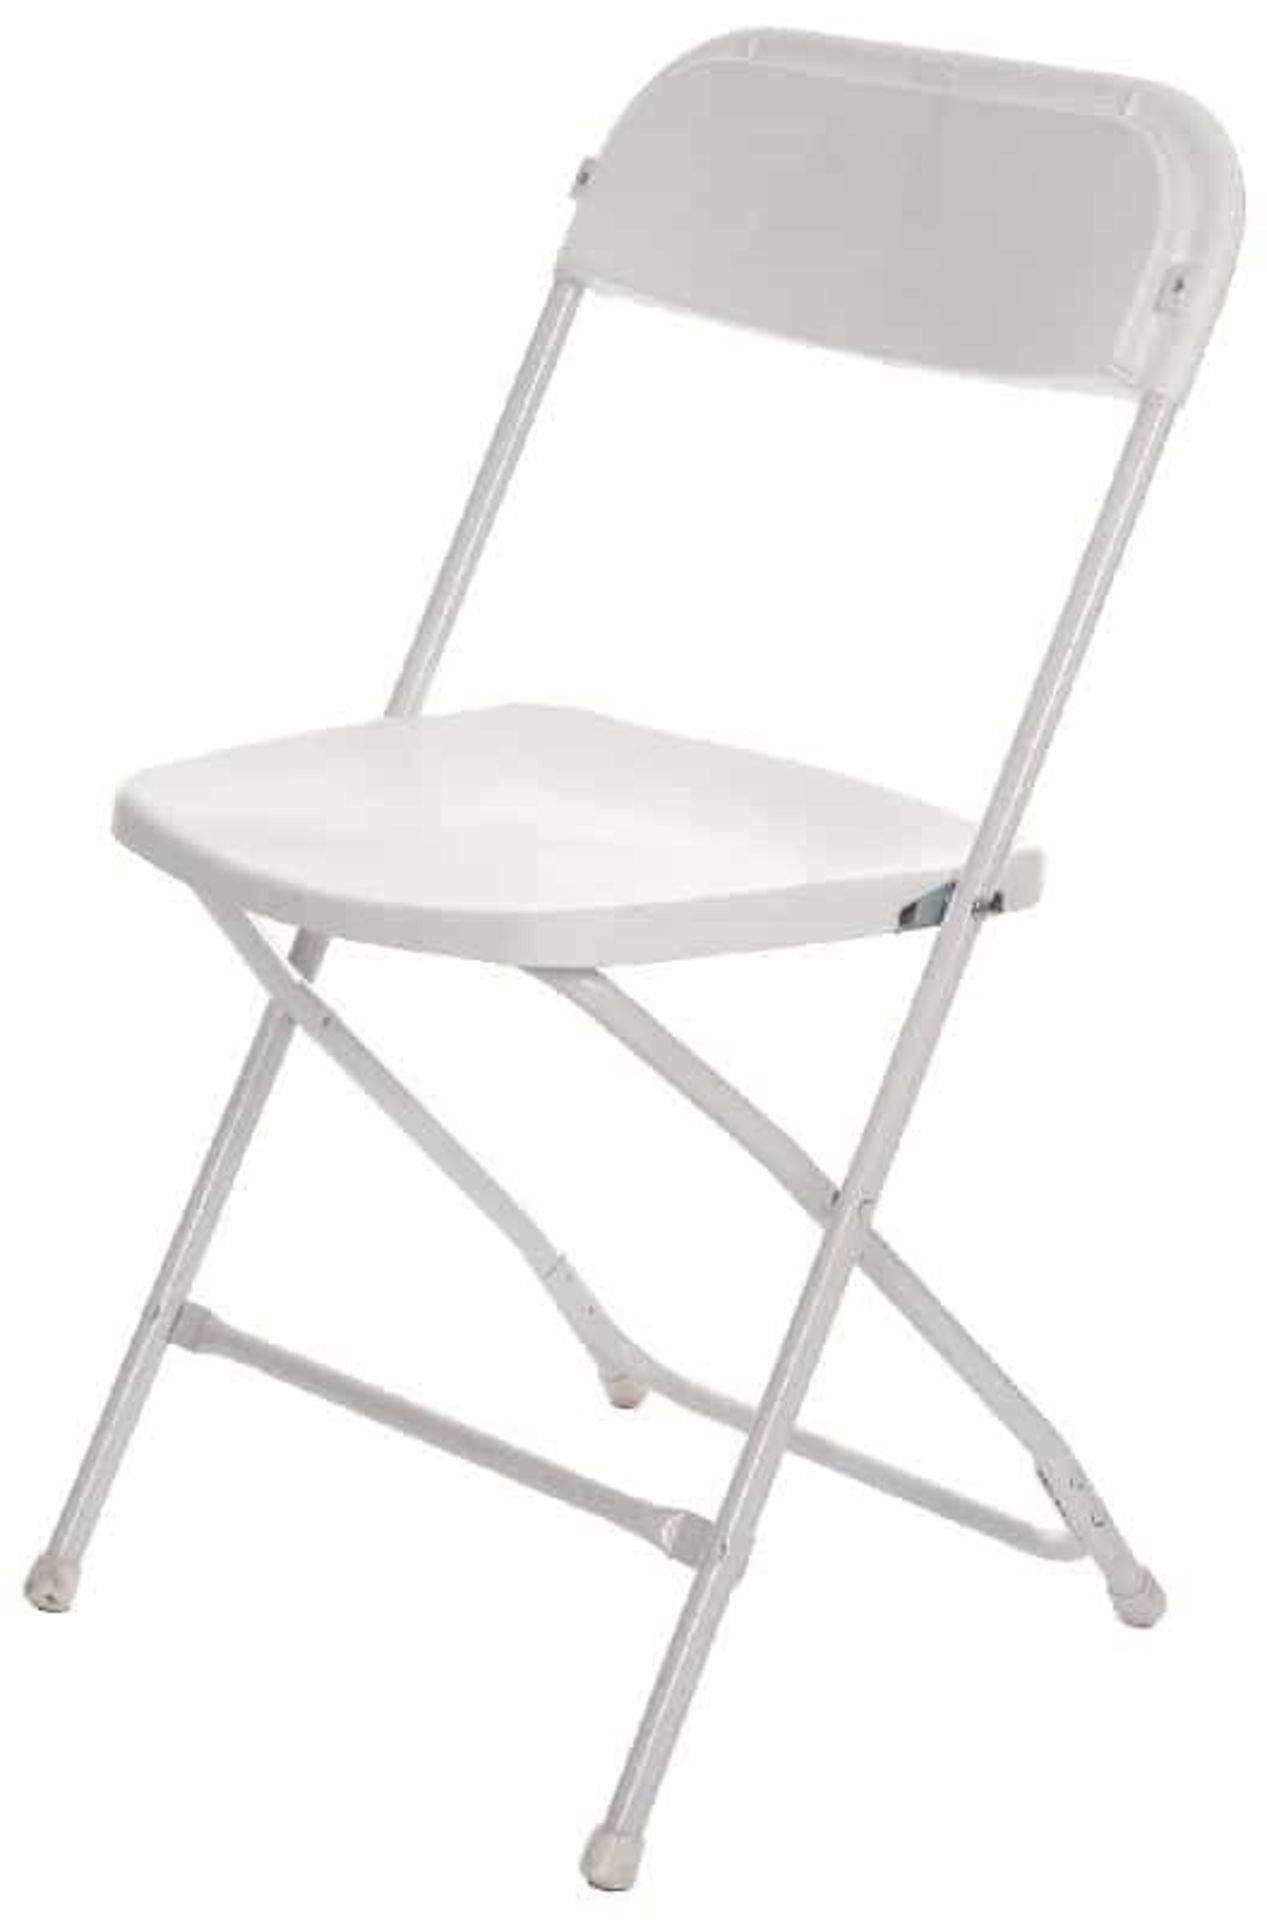 50 x White Sam Folding Chair